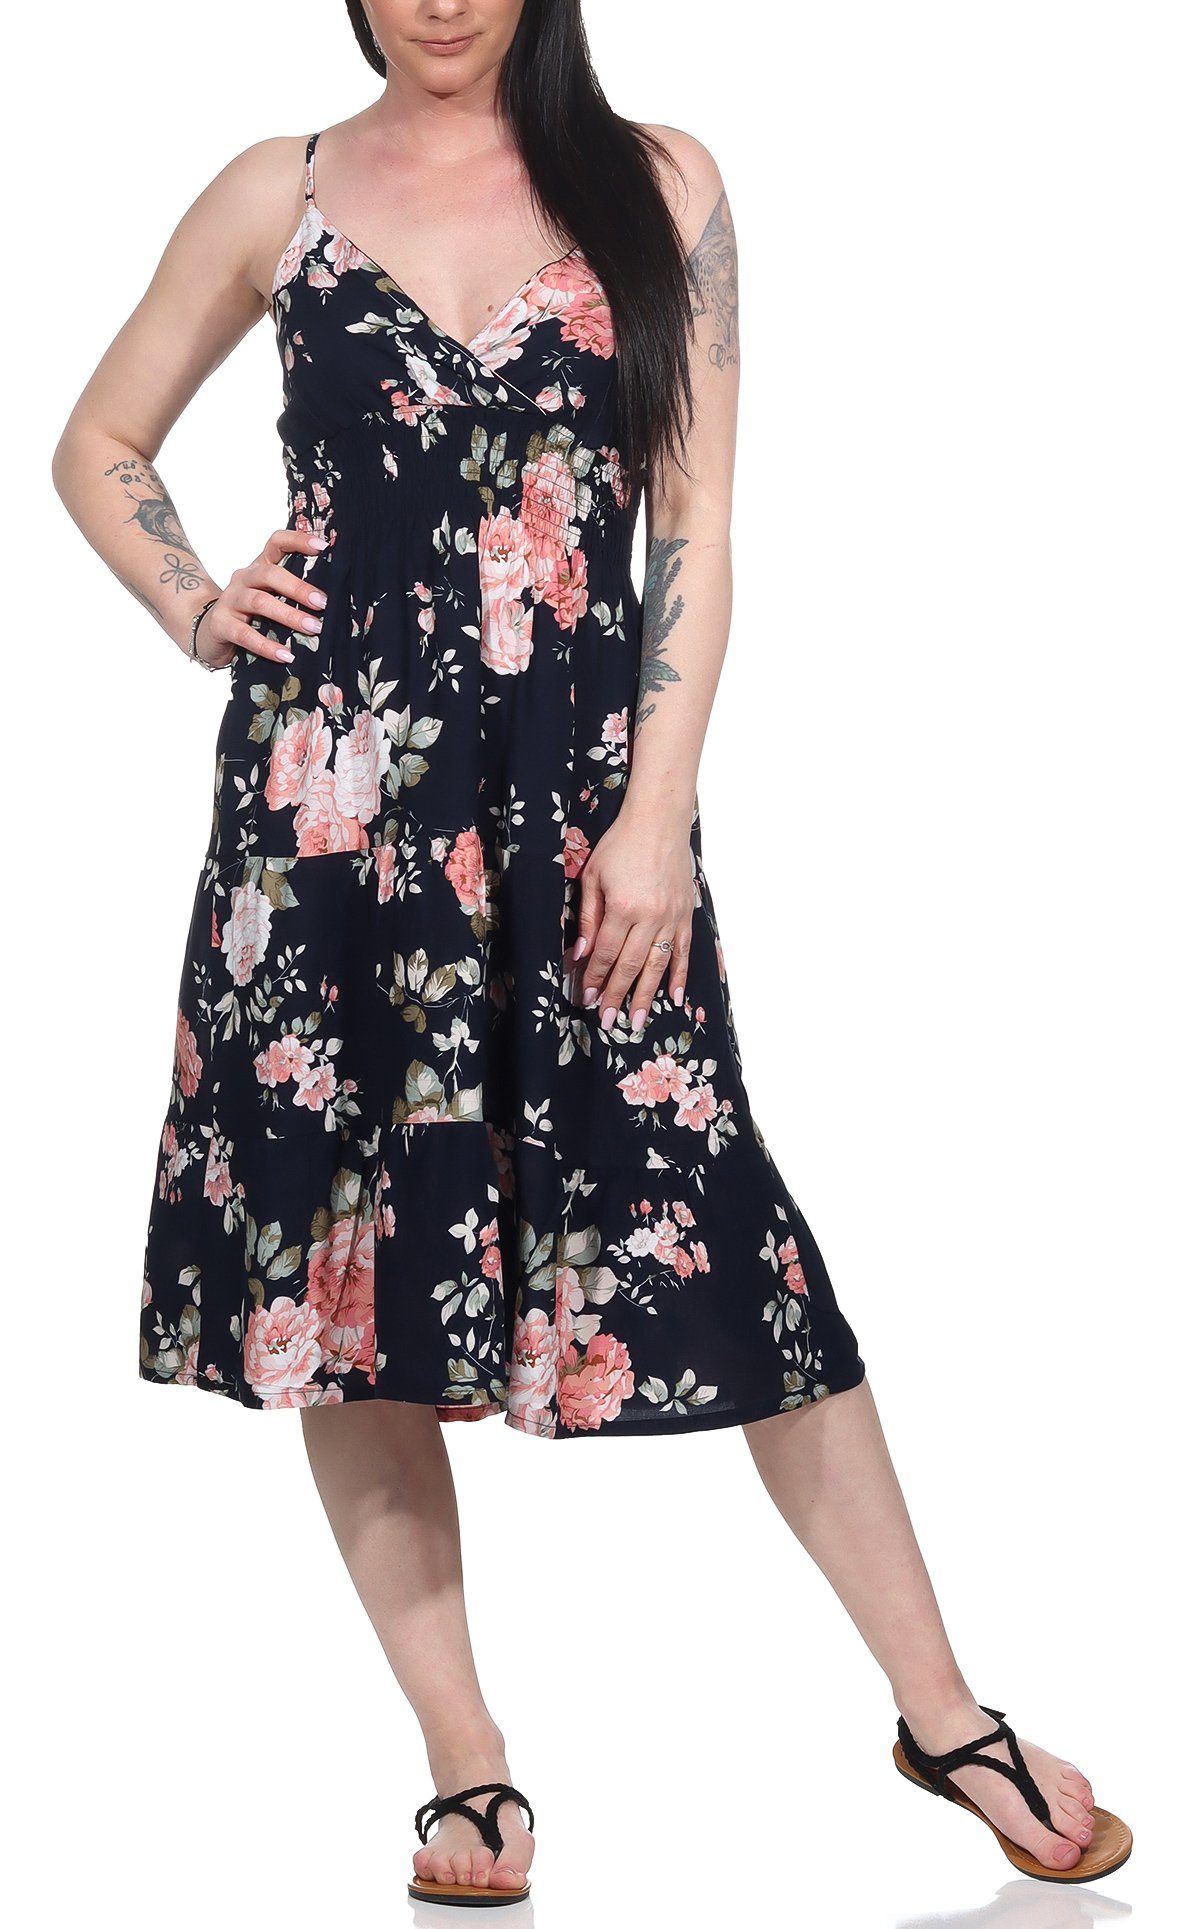 Aurela Damenmode Sommerkleid Luftige Damenkleider leichte Sommerkleider für den Urlaub mit Blumendruck, verstellbare Spaghettiträger, Gesamtlänge 90 - 93cm, Raffung Taillenbereich Marine